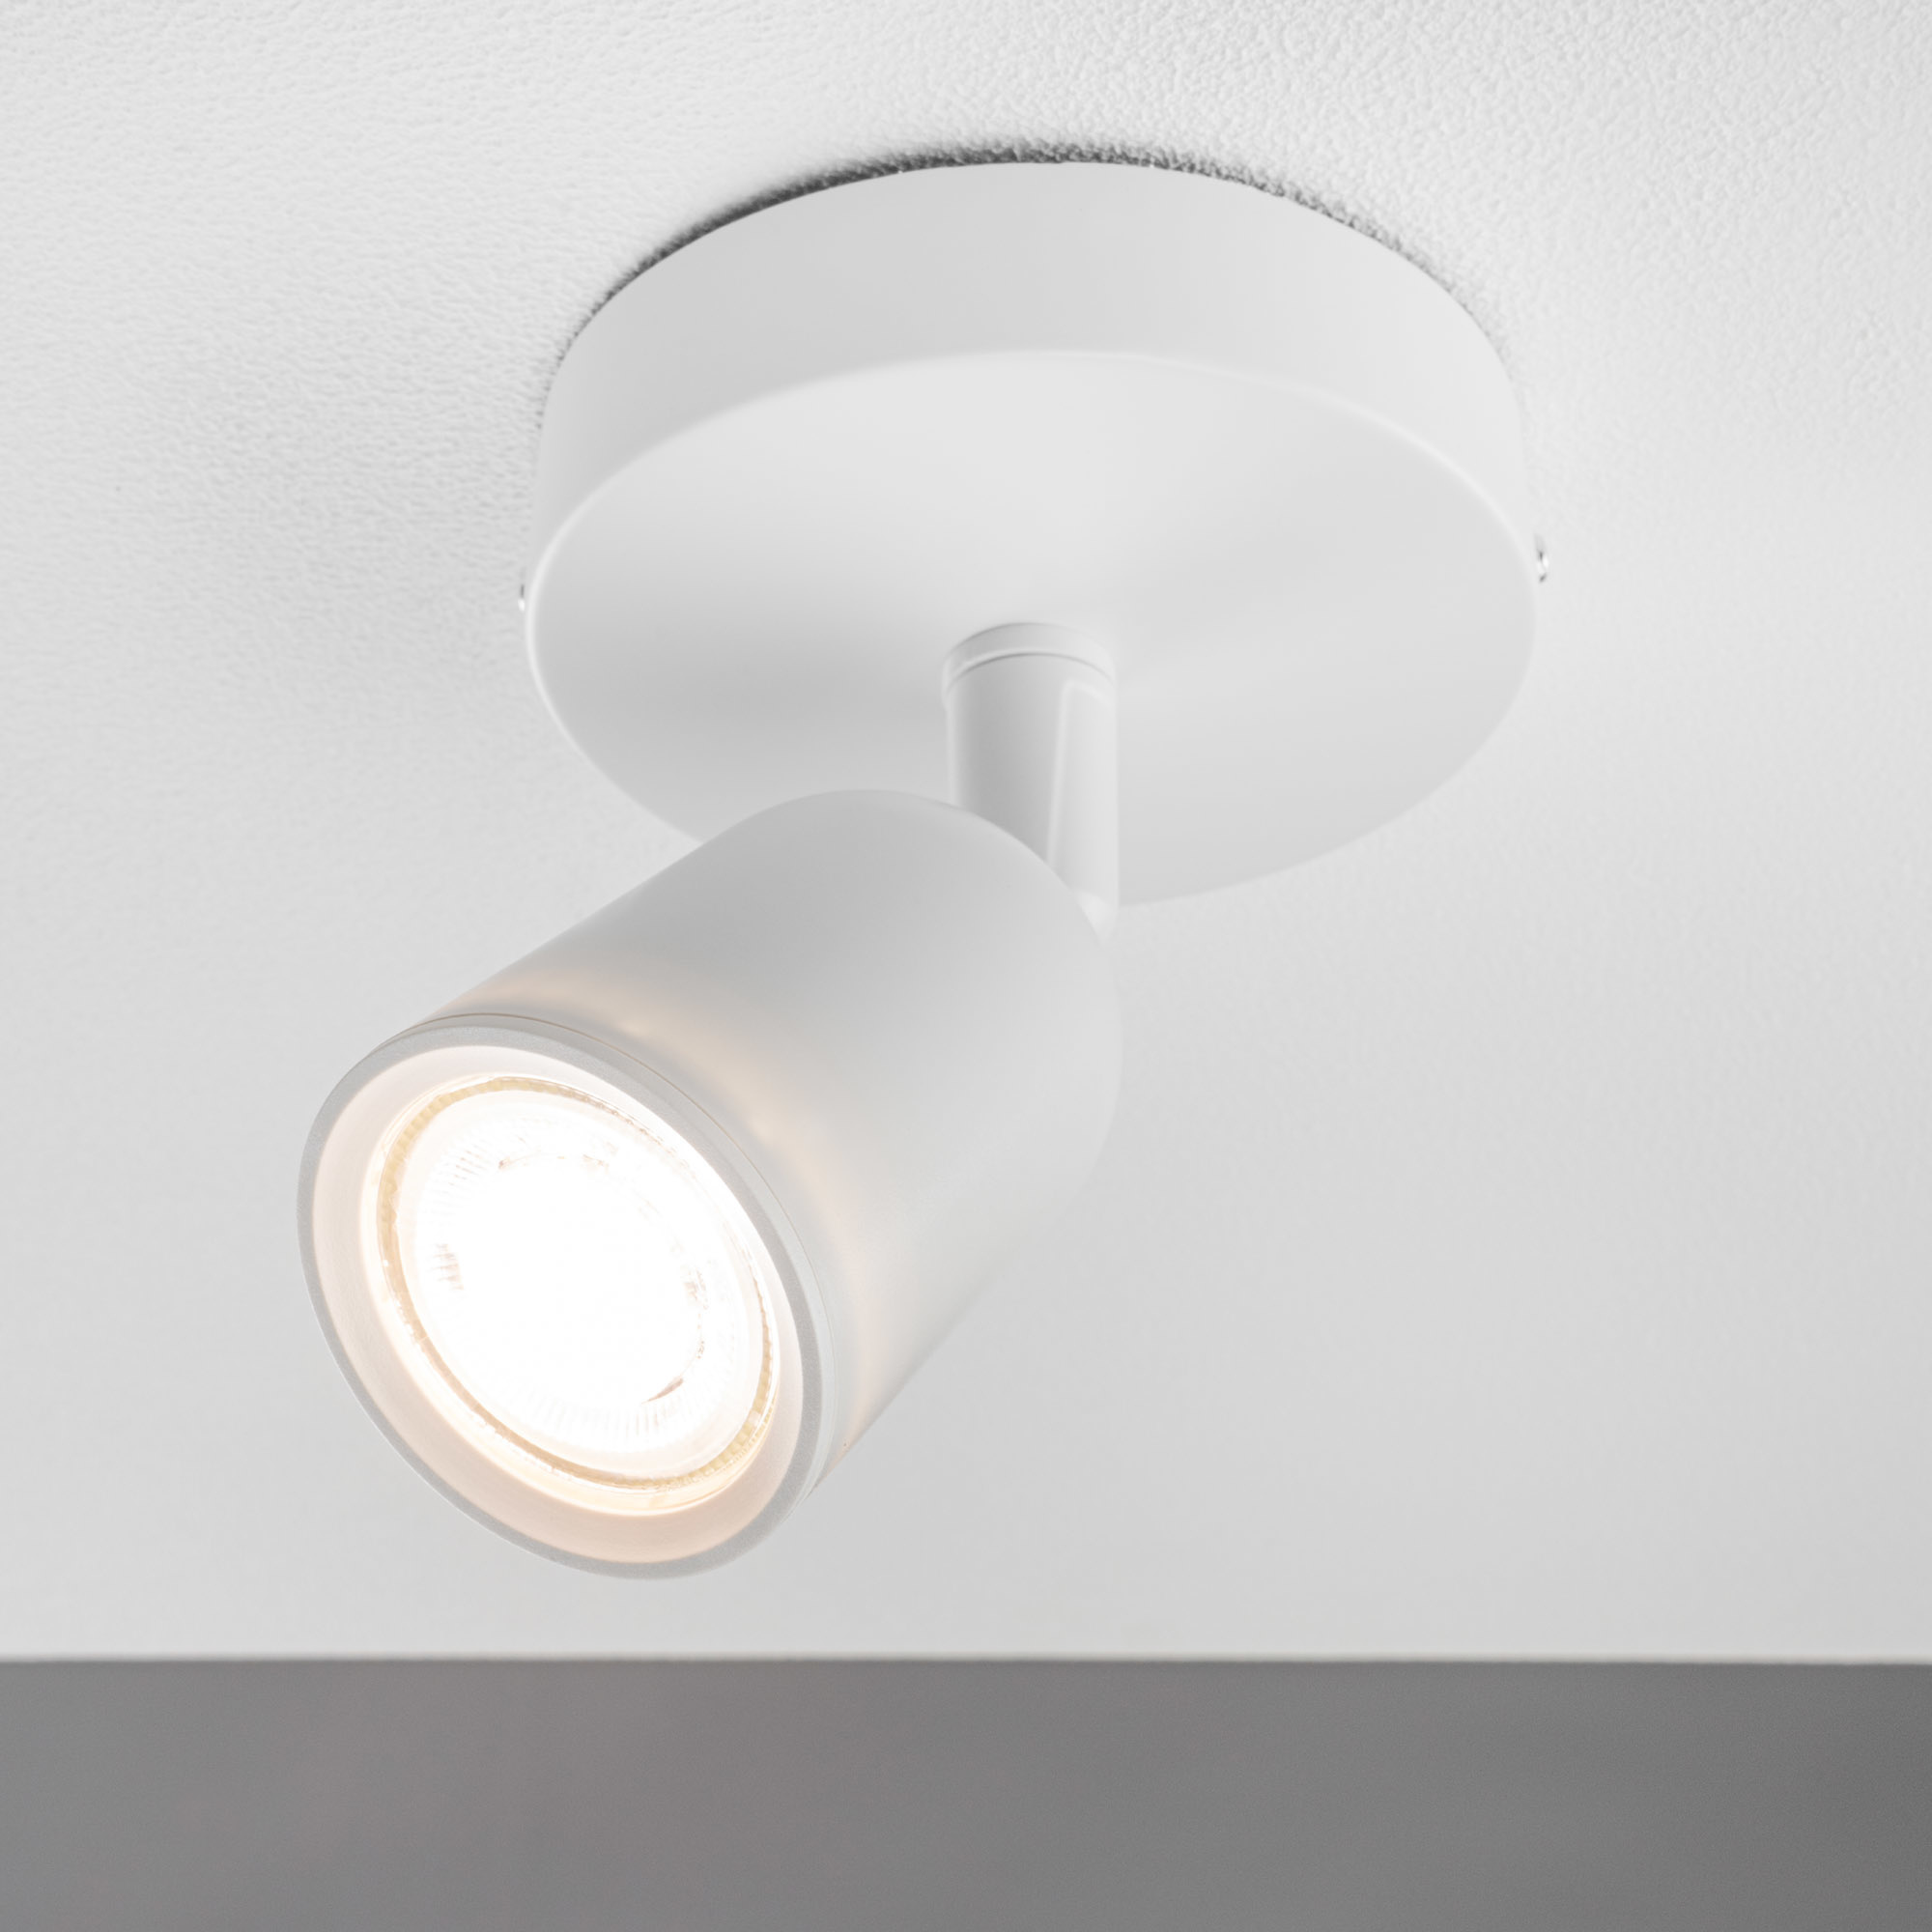 Bojim Plafonnier LED 2 Spot Orientable, Spots de Plafond Pivotants GU10  Rampe Spot 6W 550lm Blanc Chaud 2700K, Applique Murale pour Salle de Bain